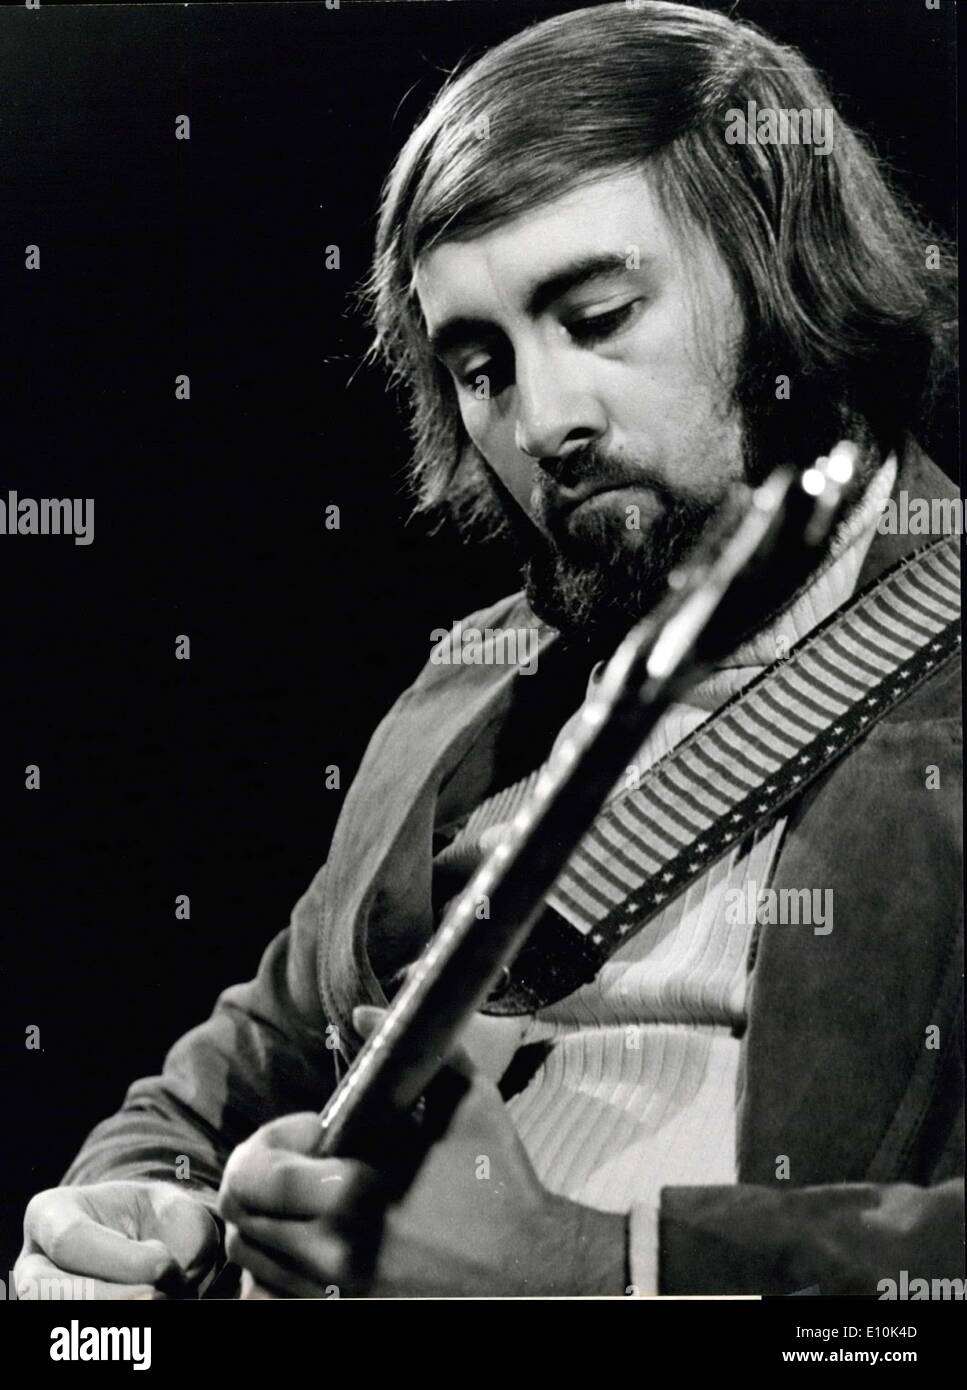 Le 30 avril 1973 - Roy Buchanan à Montreux : America's most famous rock-guitariste Roy Bucharan a été la guest star de la soirée de gala Banque D'Images